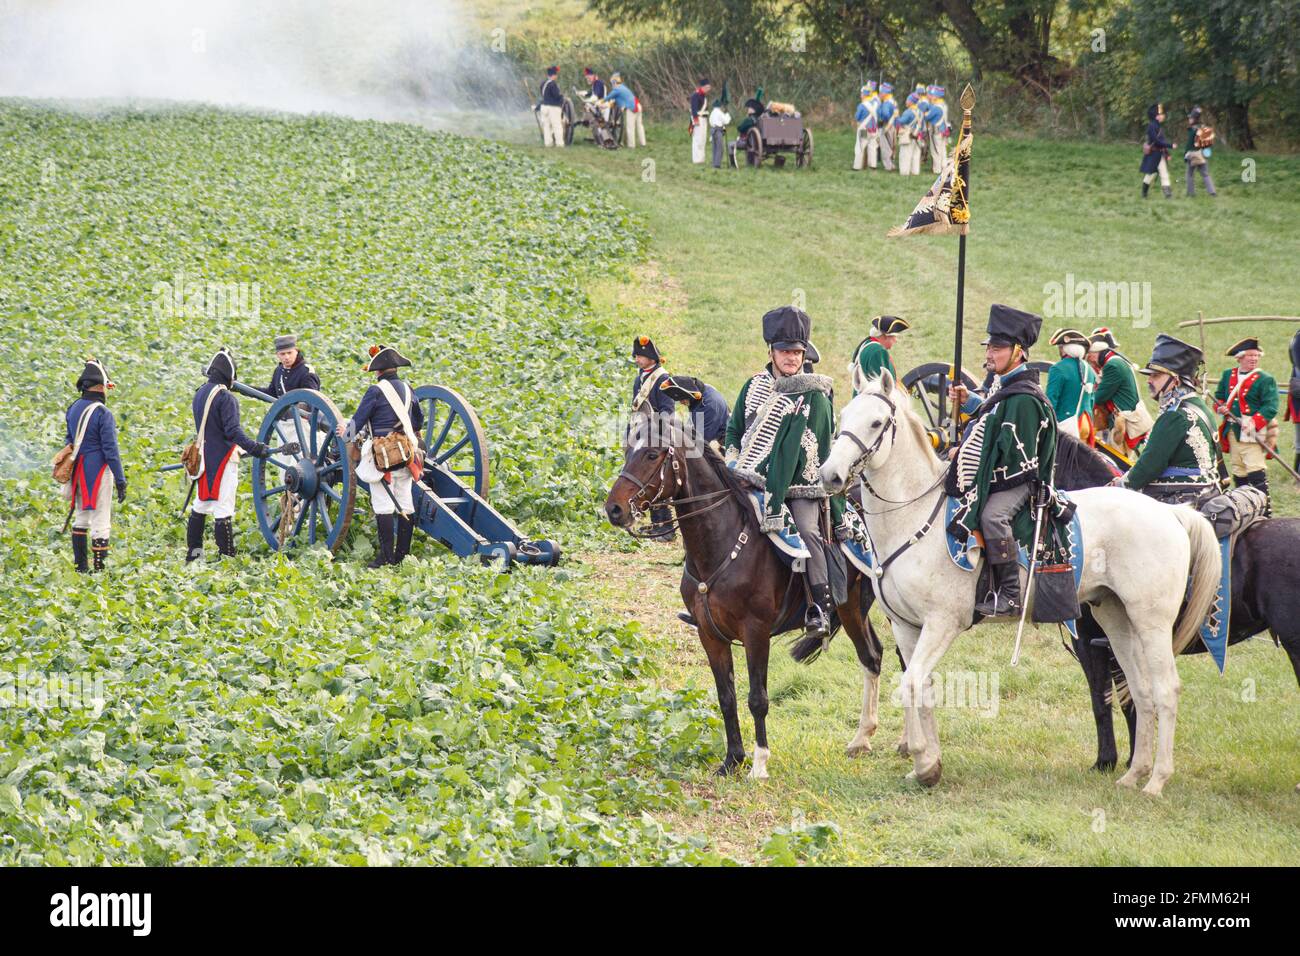 Reconstitution de la bataille franco-prussienne de Jena / Iena / Auerstedt 1806 - 2016 Stock Photo